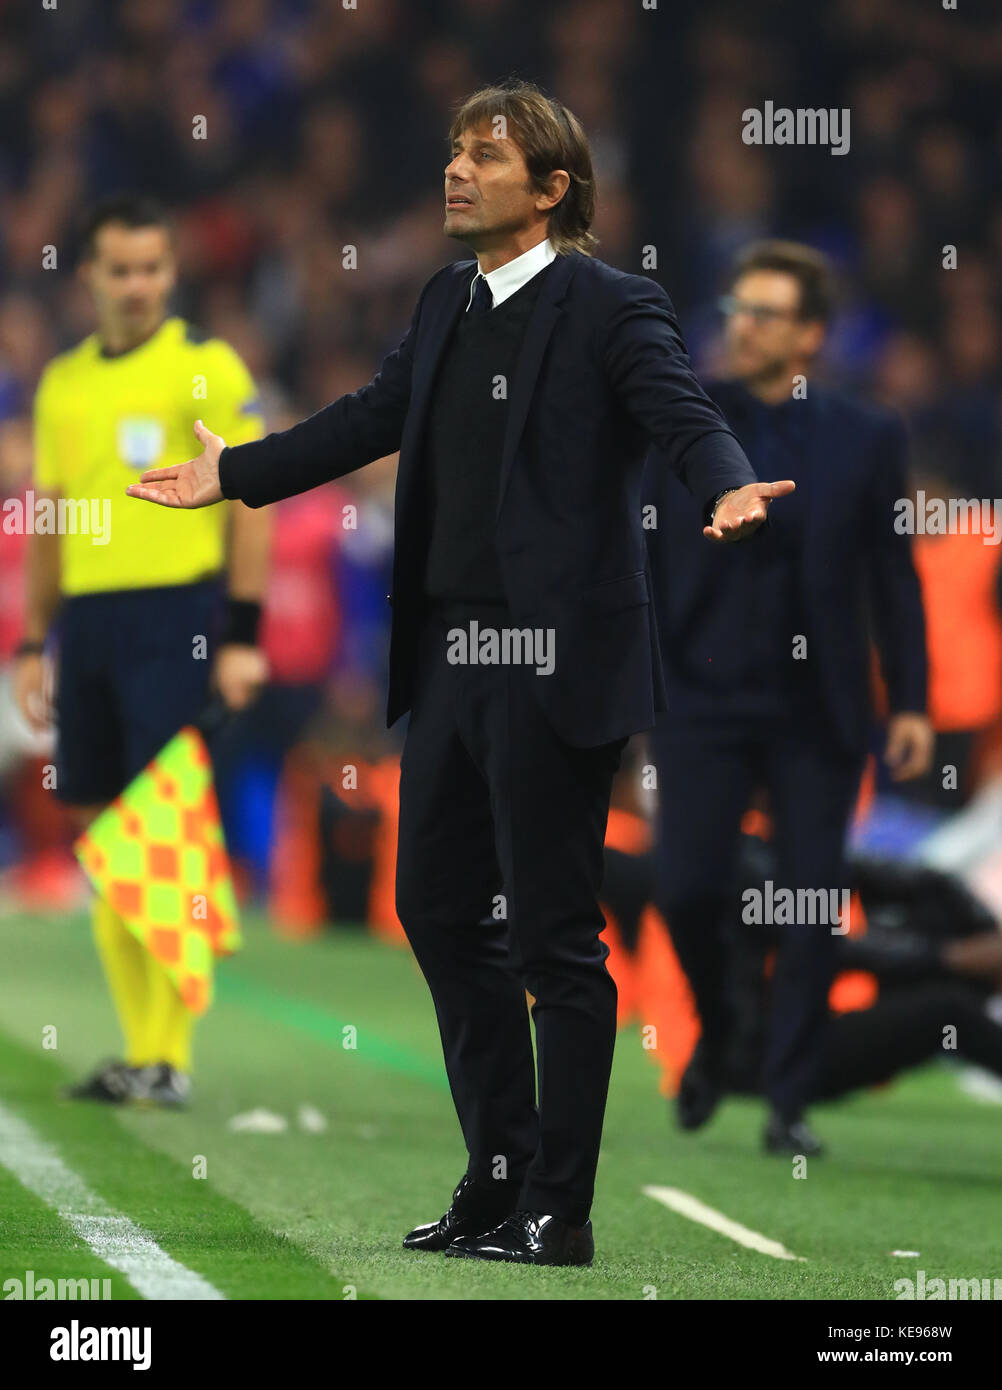 Antonio Conte, le directeur de Chelsea, se charge de la ligne de contact lors du match du groupe C de la Ligue des champions de l'UEFA au Stamford Bridge à Londres. Banque D'Images